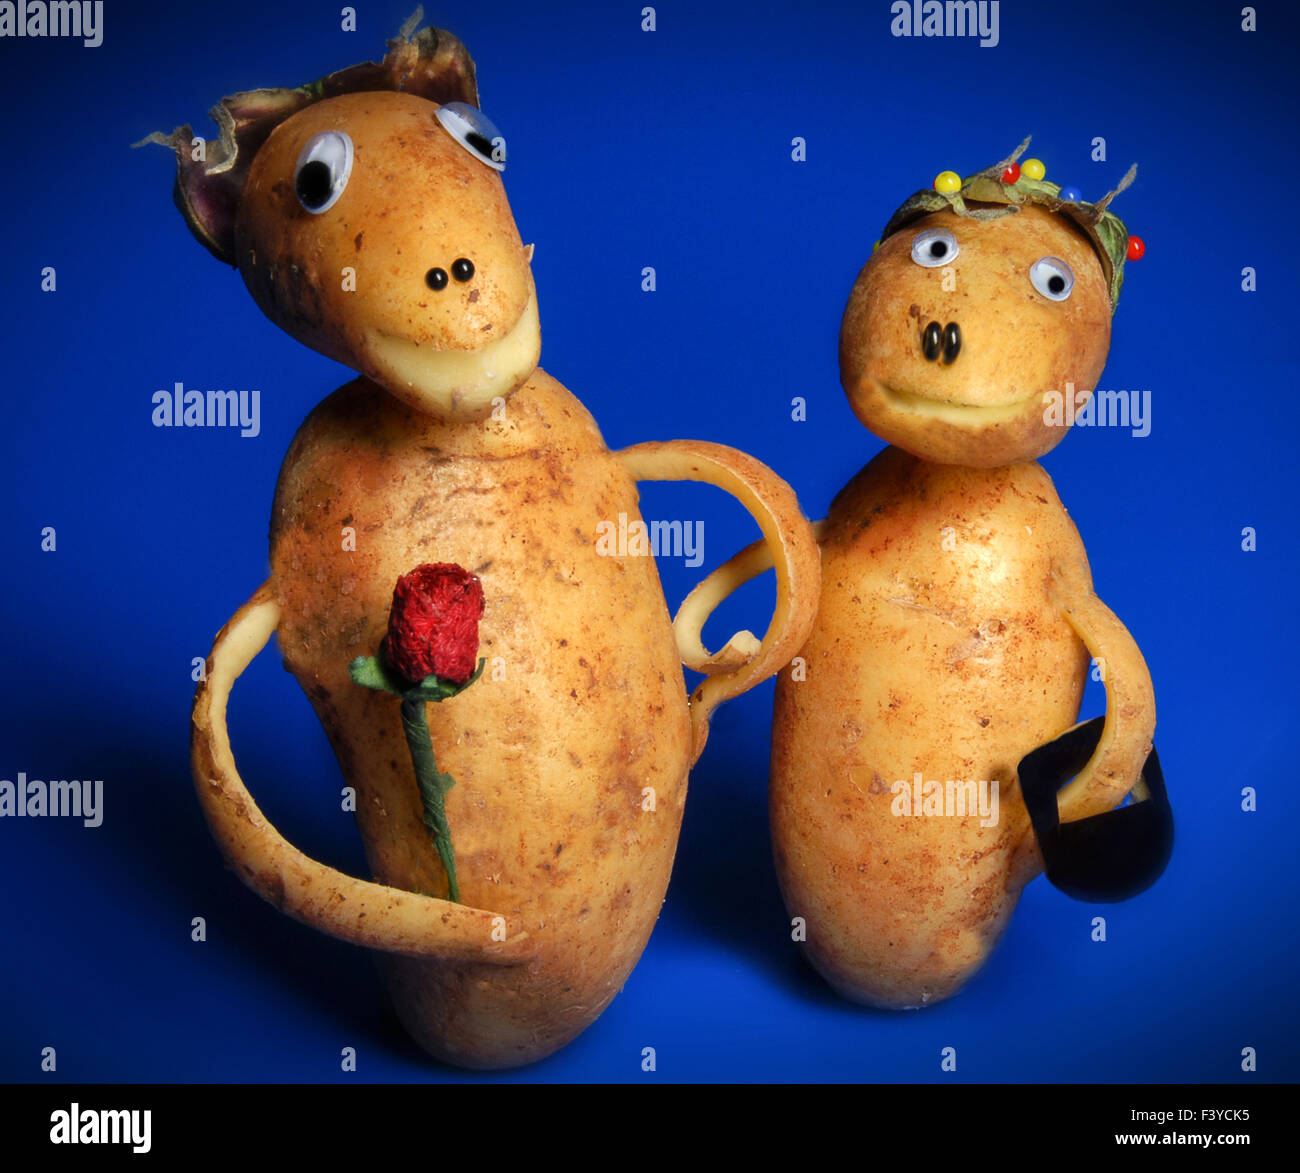 potato twosome Stock Photo